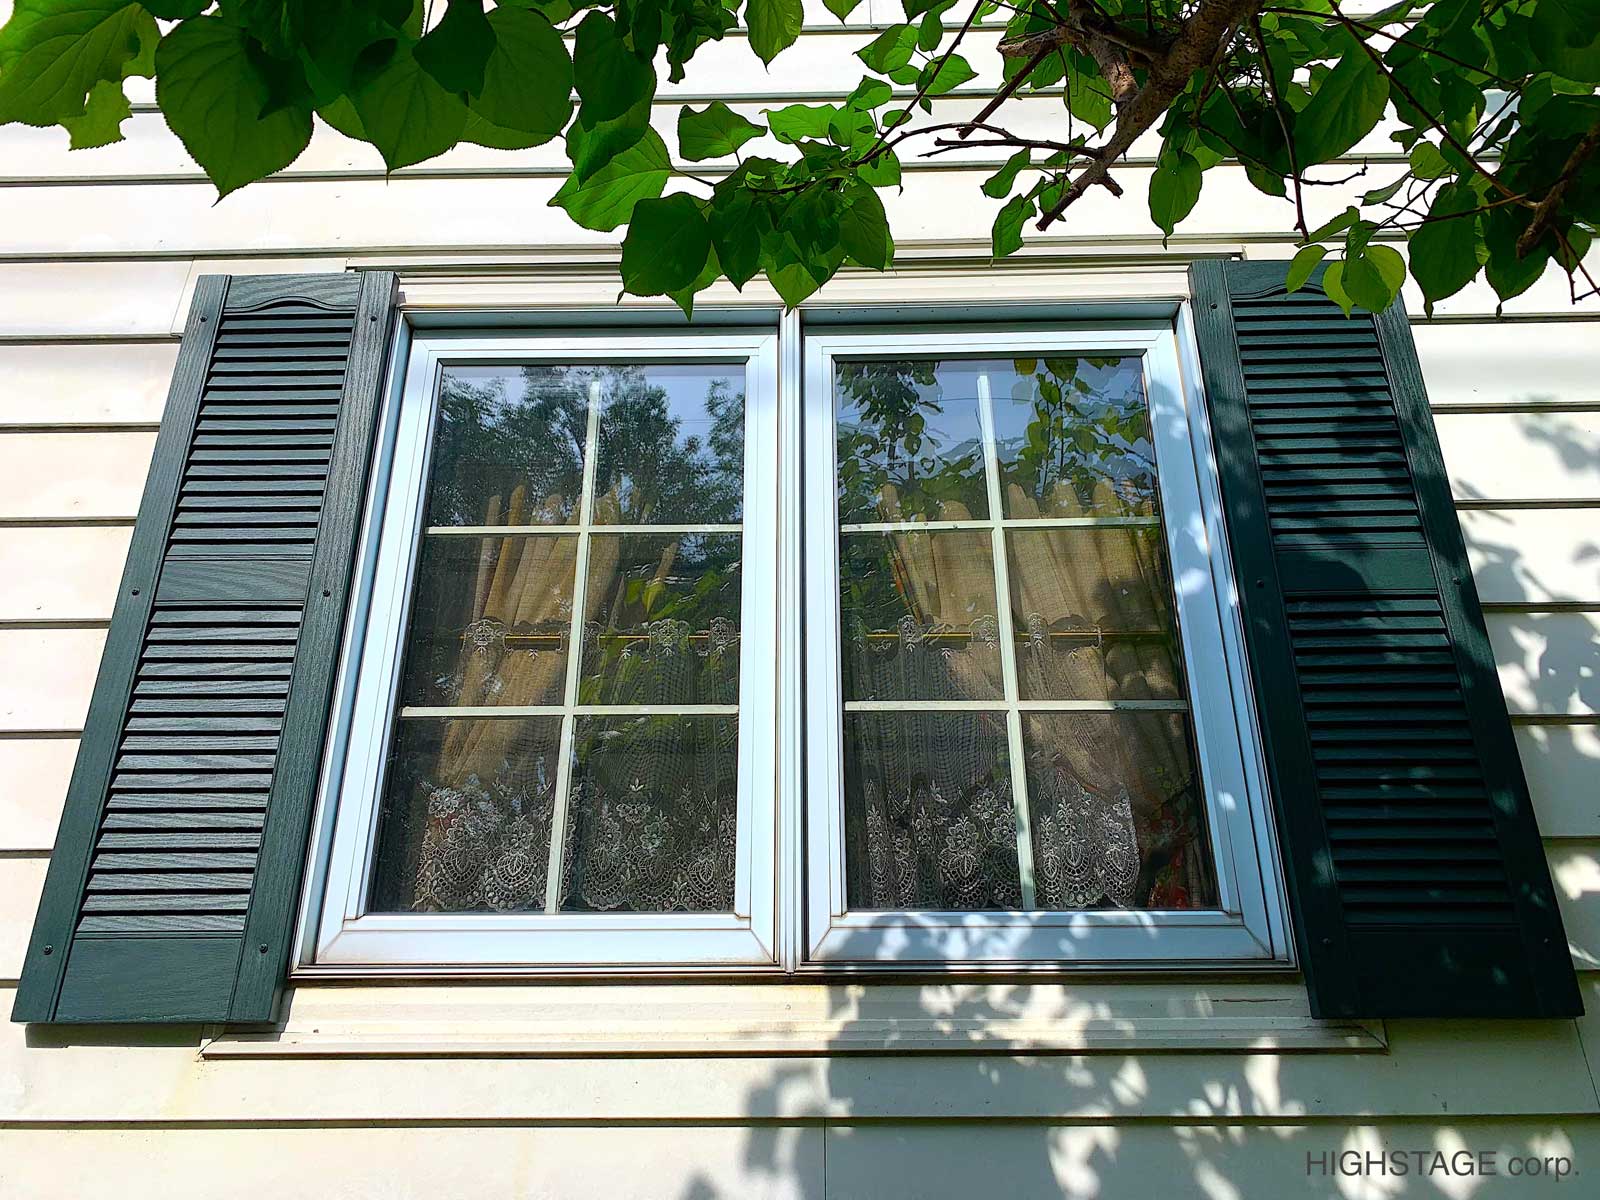 【メンテナンス・修理】窓飾りシャッター交換 印象が”劇的”に変わります。 | ハイステージの輸入住宅リフォーム・メンテナンス・リノベーション